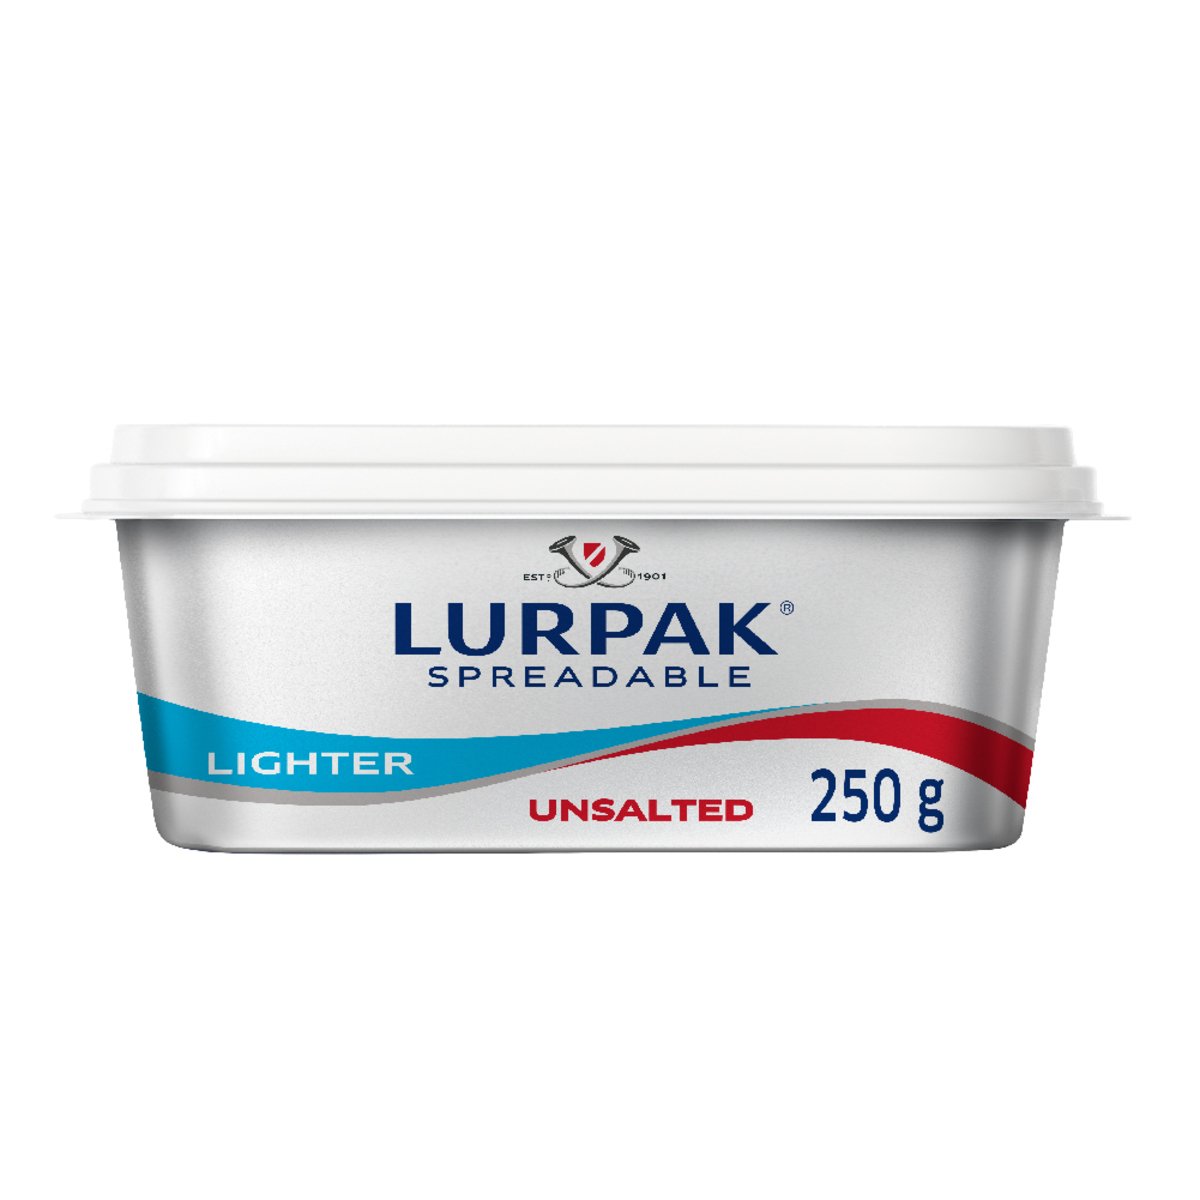 Lurpak Spreadable Light Butter Unsalted 250 g